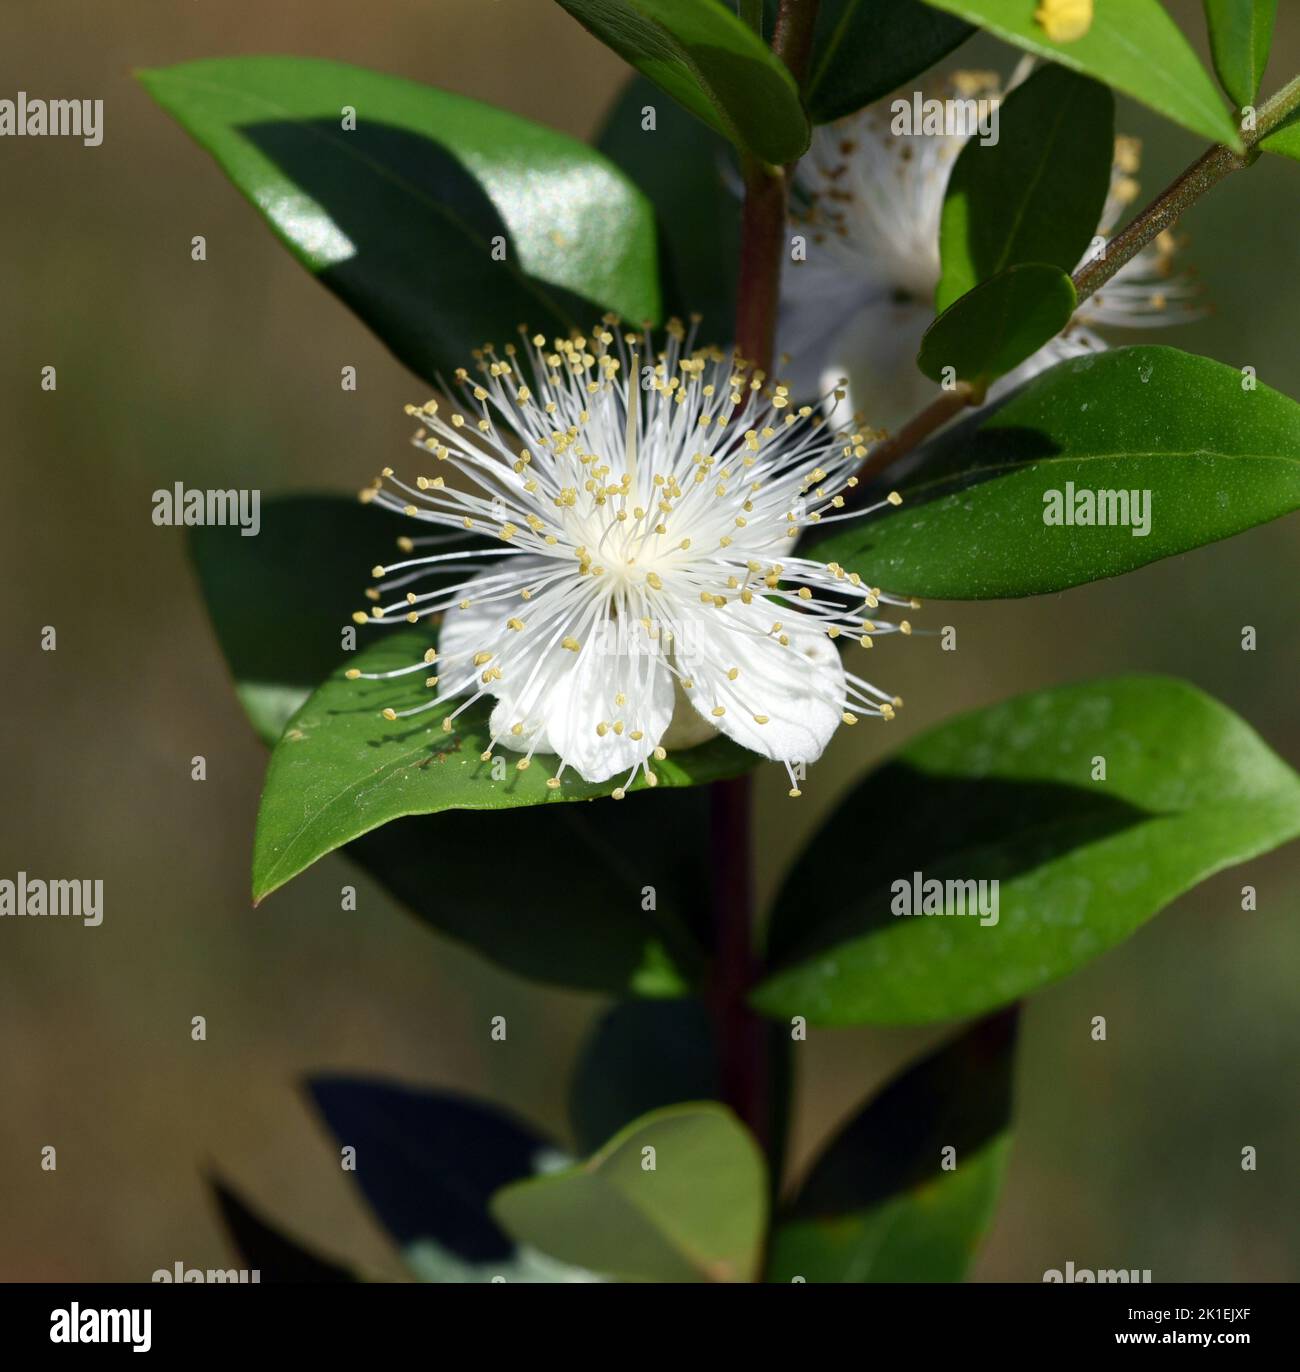 Myrtle, Myrtus communis, chiamato anche balsamo è un arbusto con bellissimi fiori bianchi. Si tratta di una pianta medicinale importante e di una pianta da giardino attraente. Foto Stock